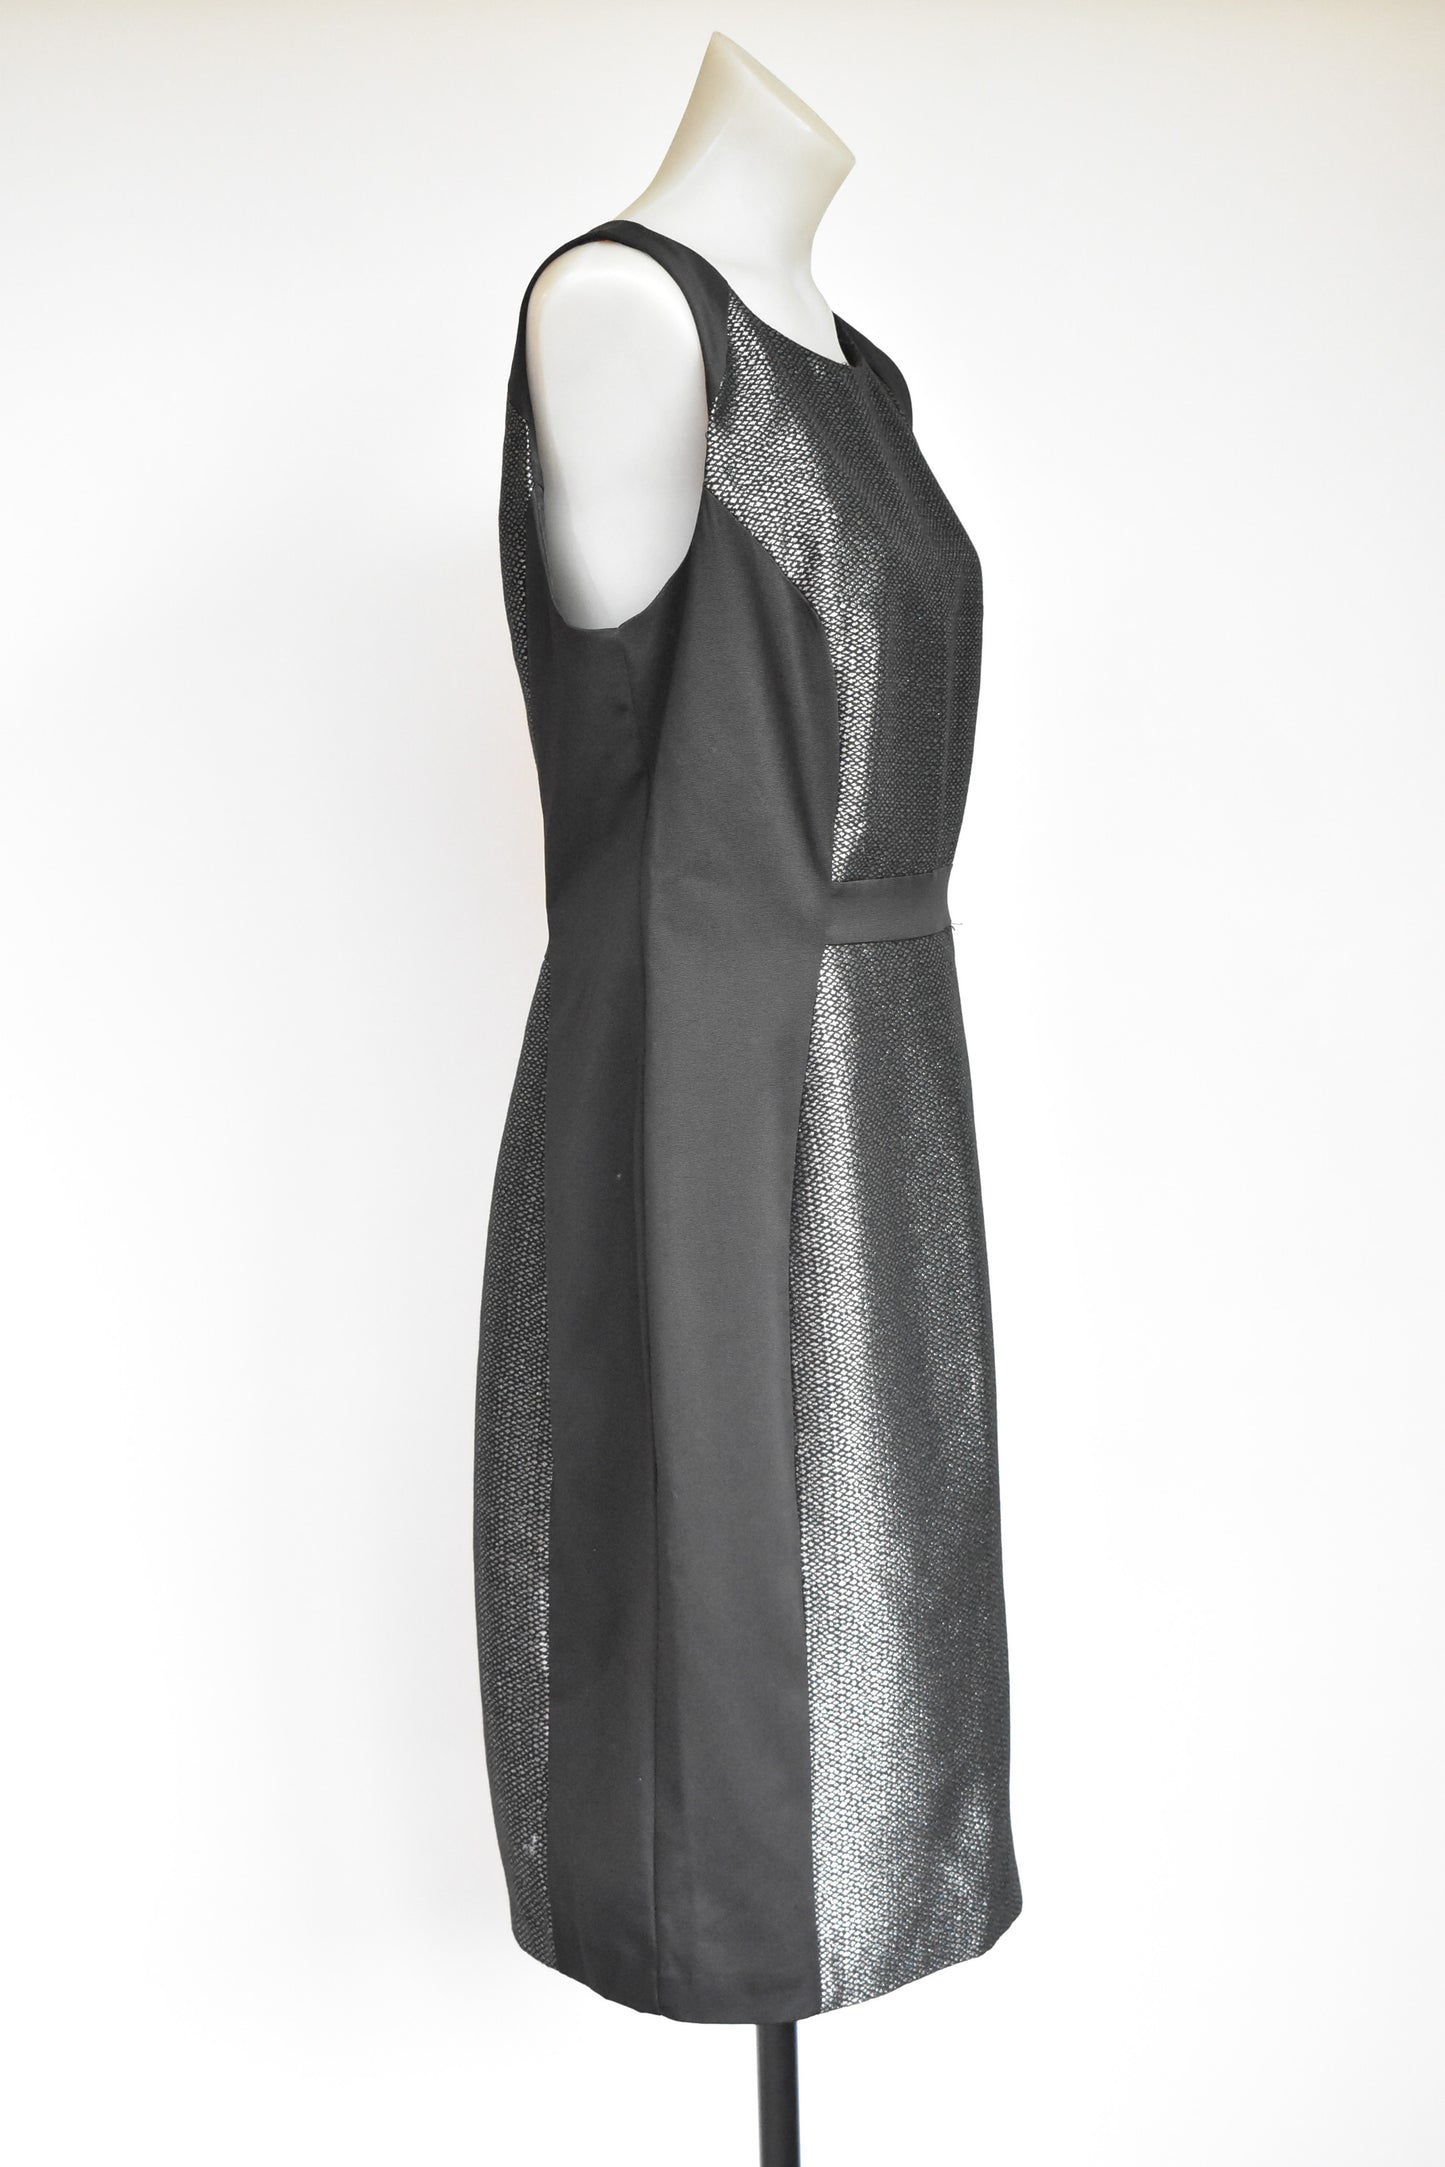 Jacqui E elegant metallic pencil dress, size M